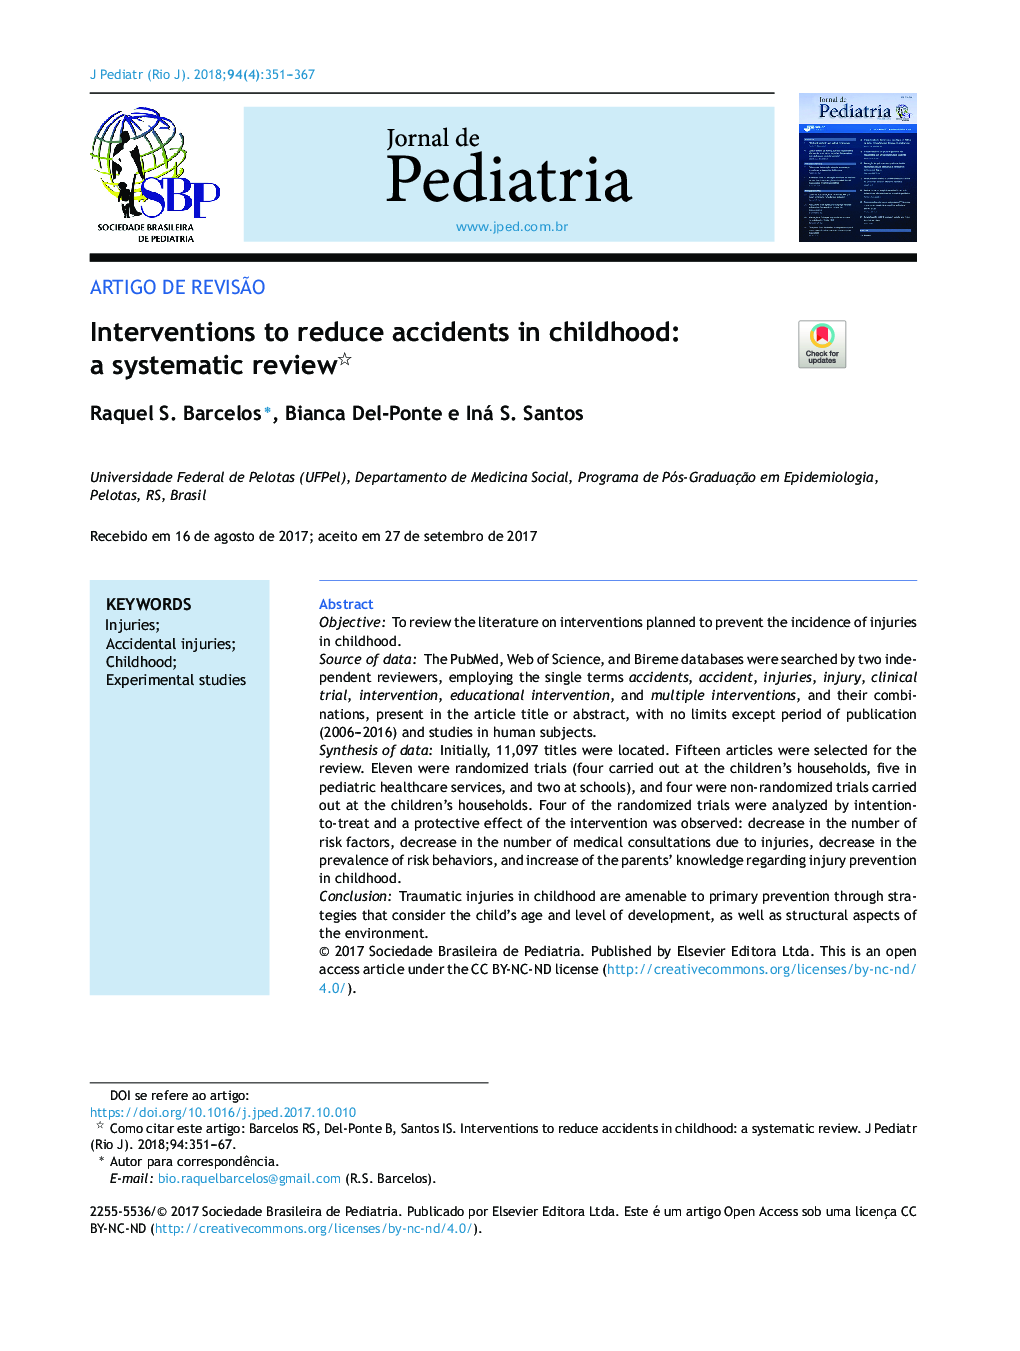 مداخلات برای کاهش حوادث در دوران کودکی: بررسی سیستماتیک 